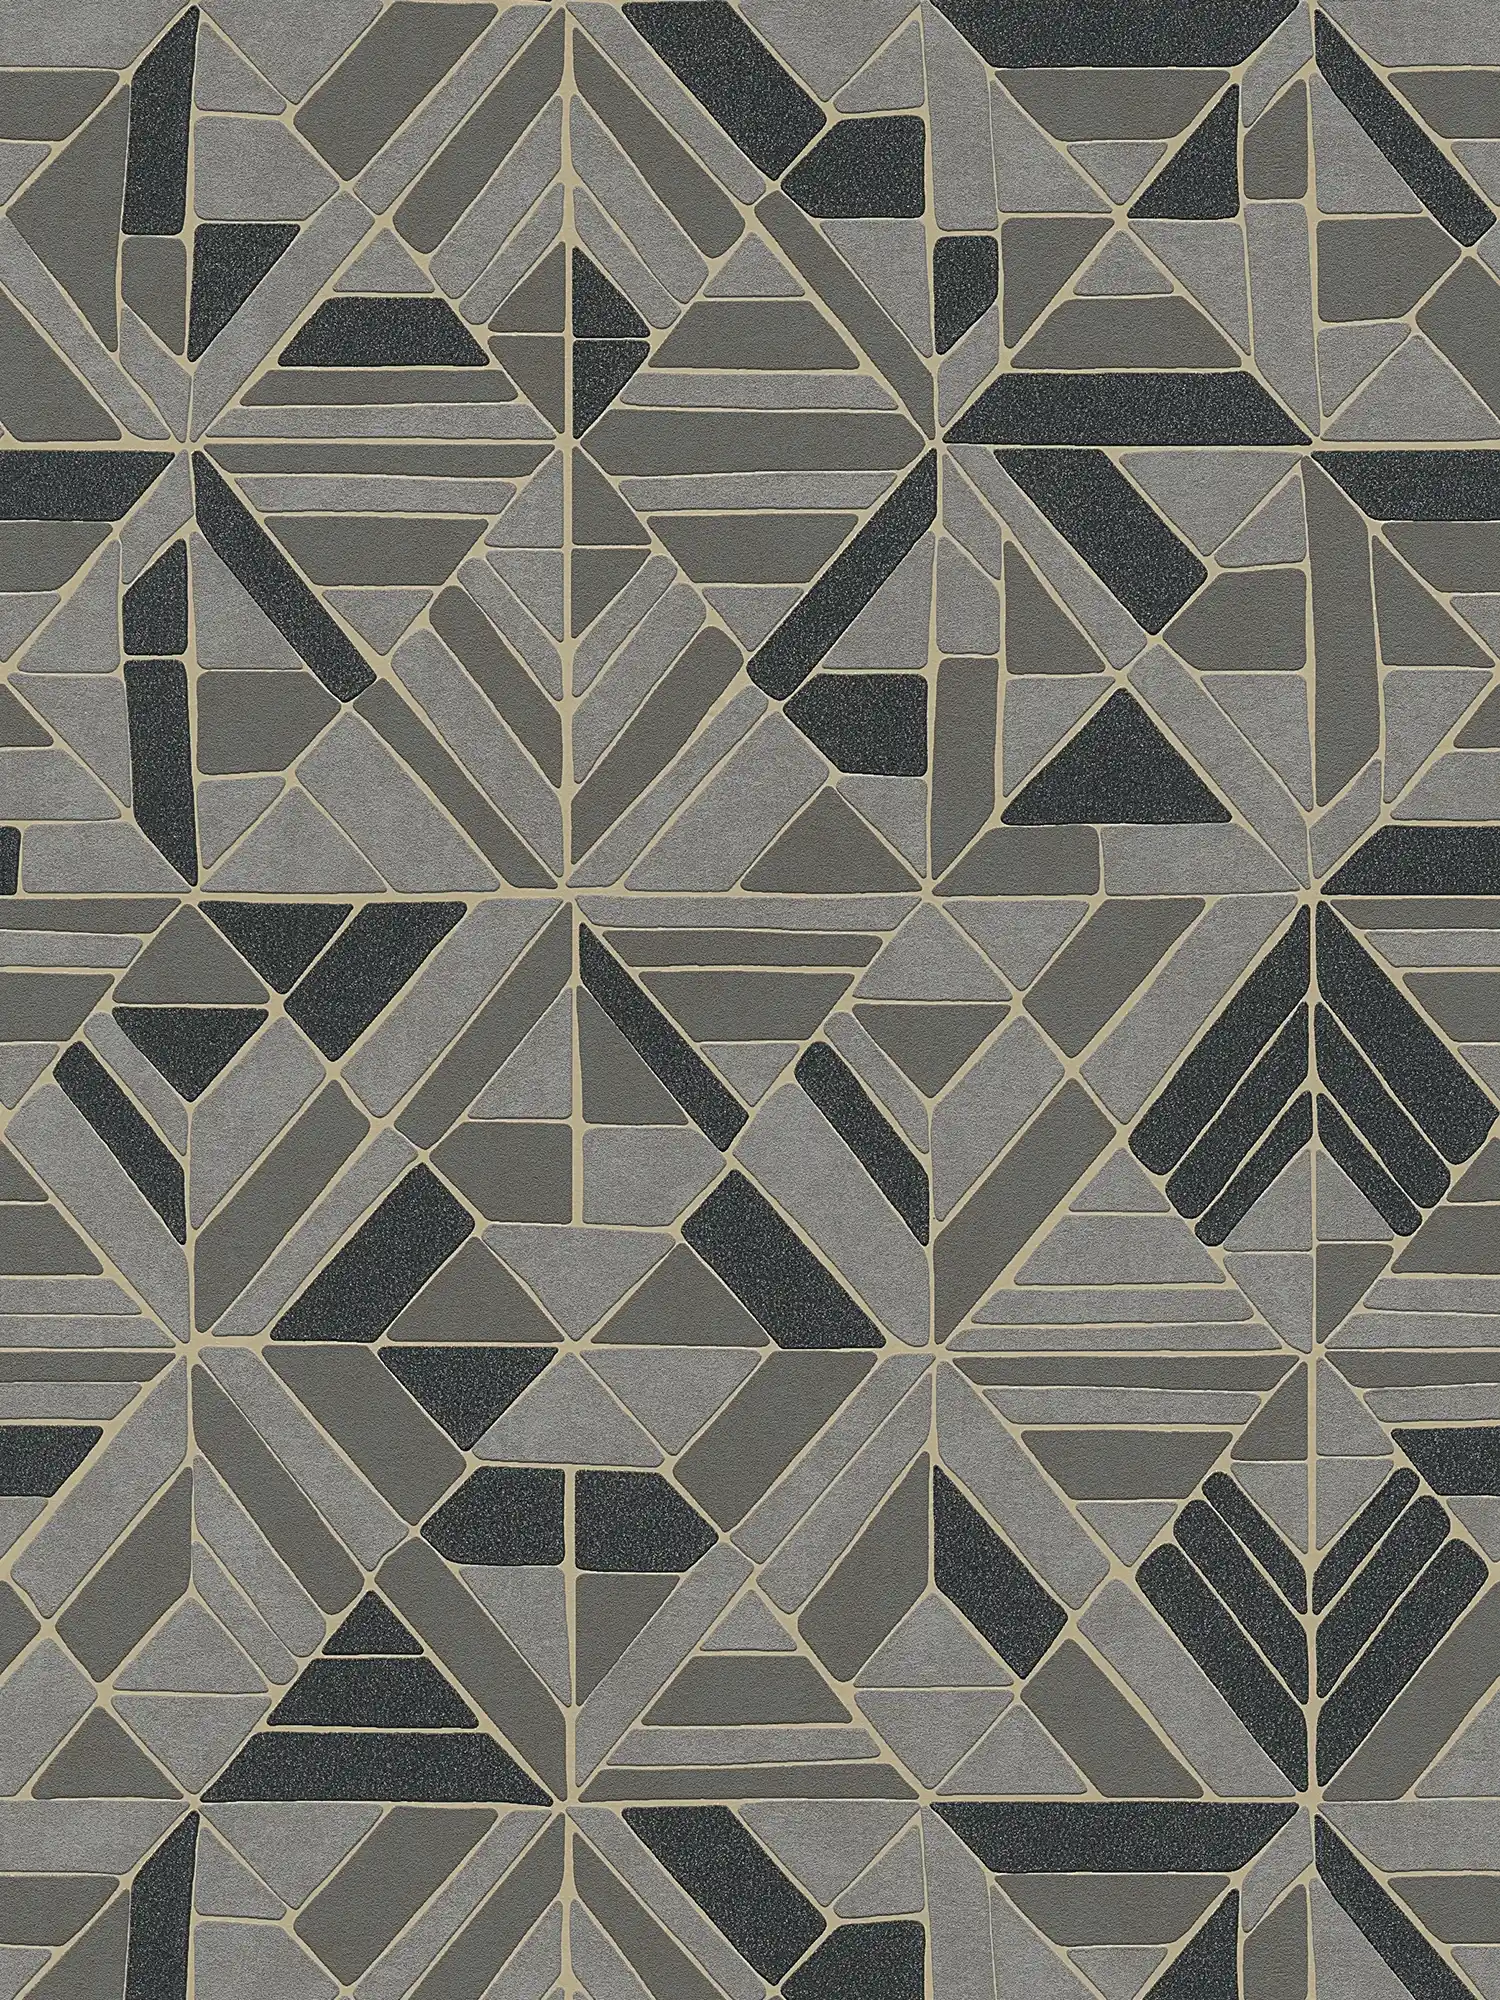 Tapete geometrisches Muster & Metallic-Akzente – Braun, Schwarz, Gold
